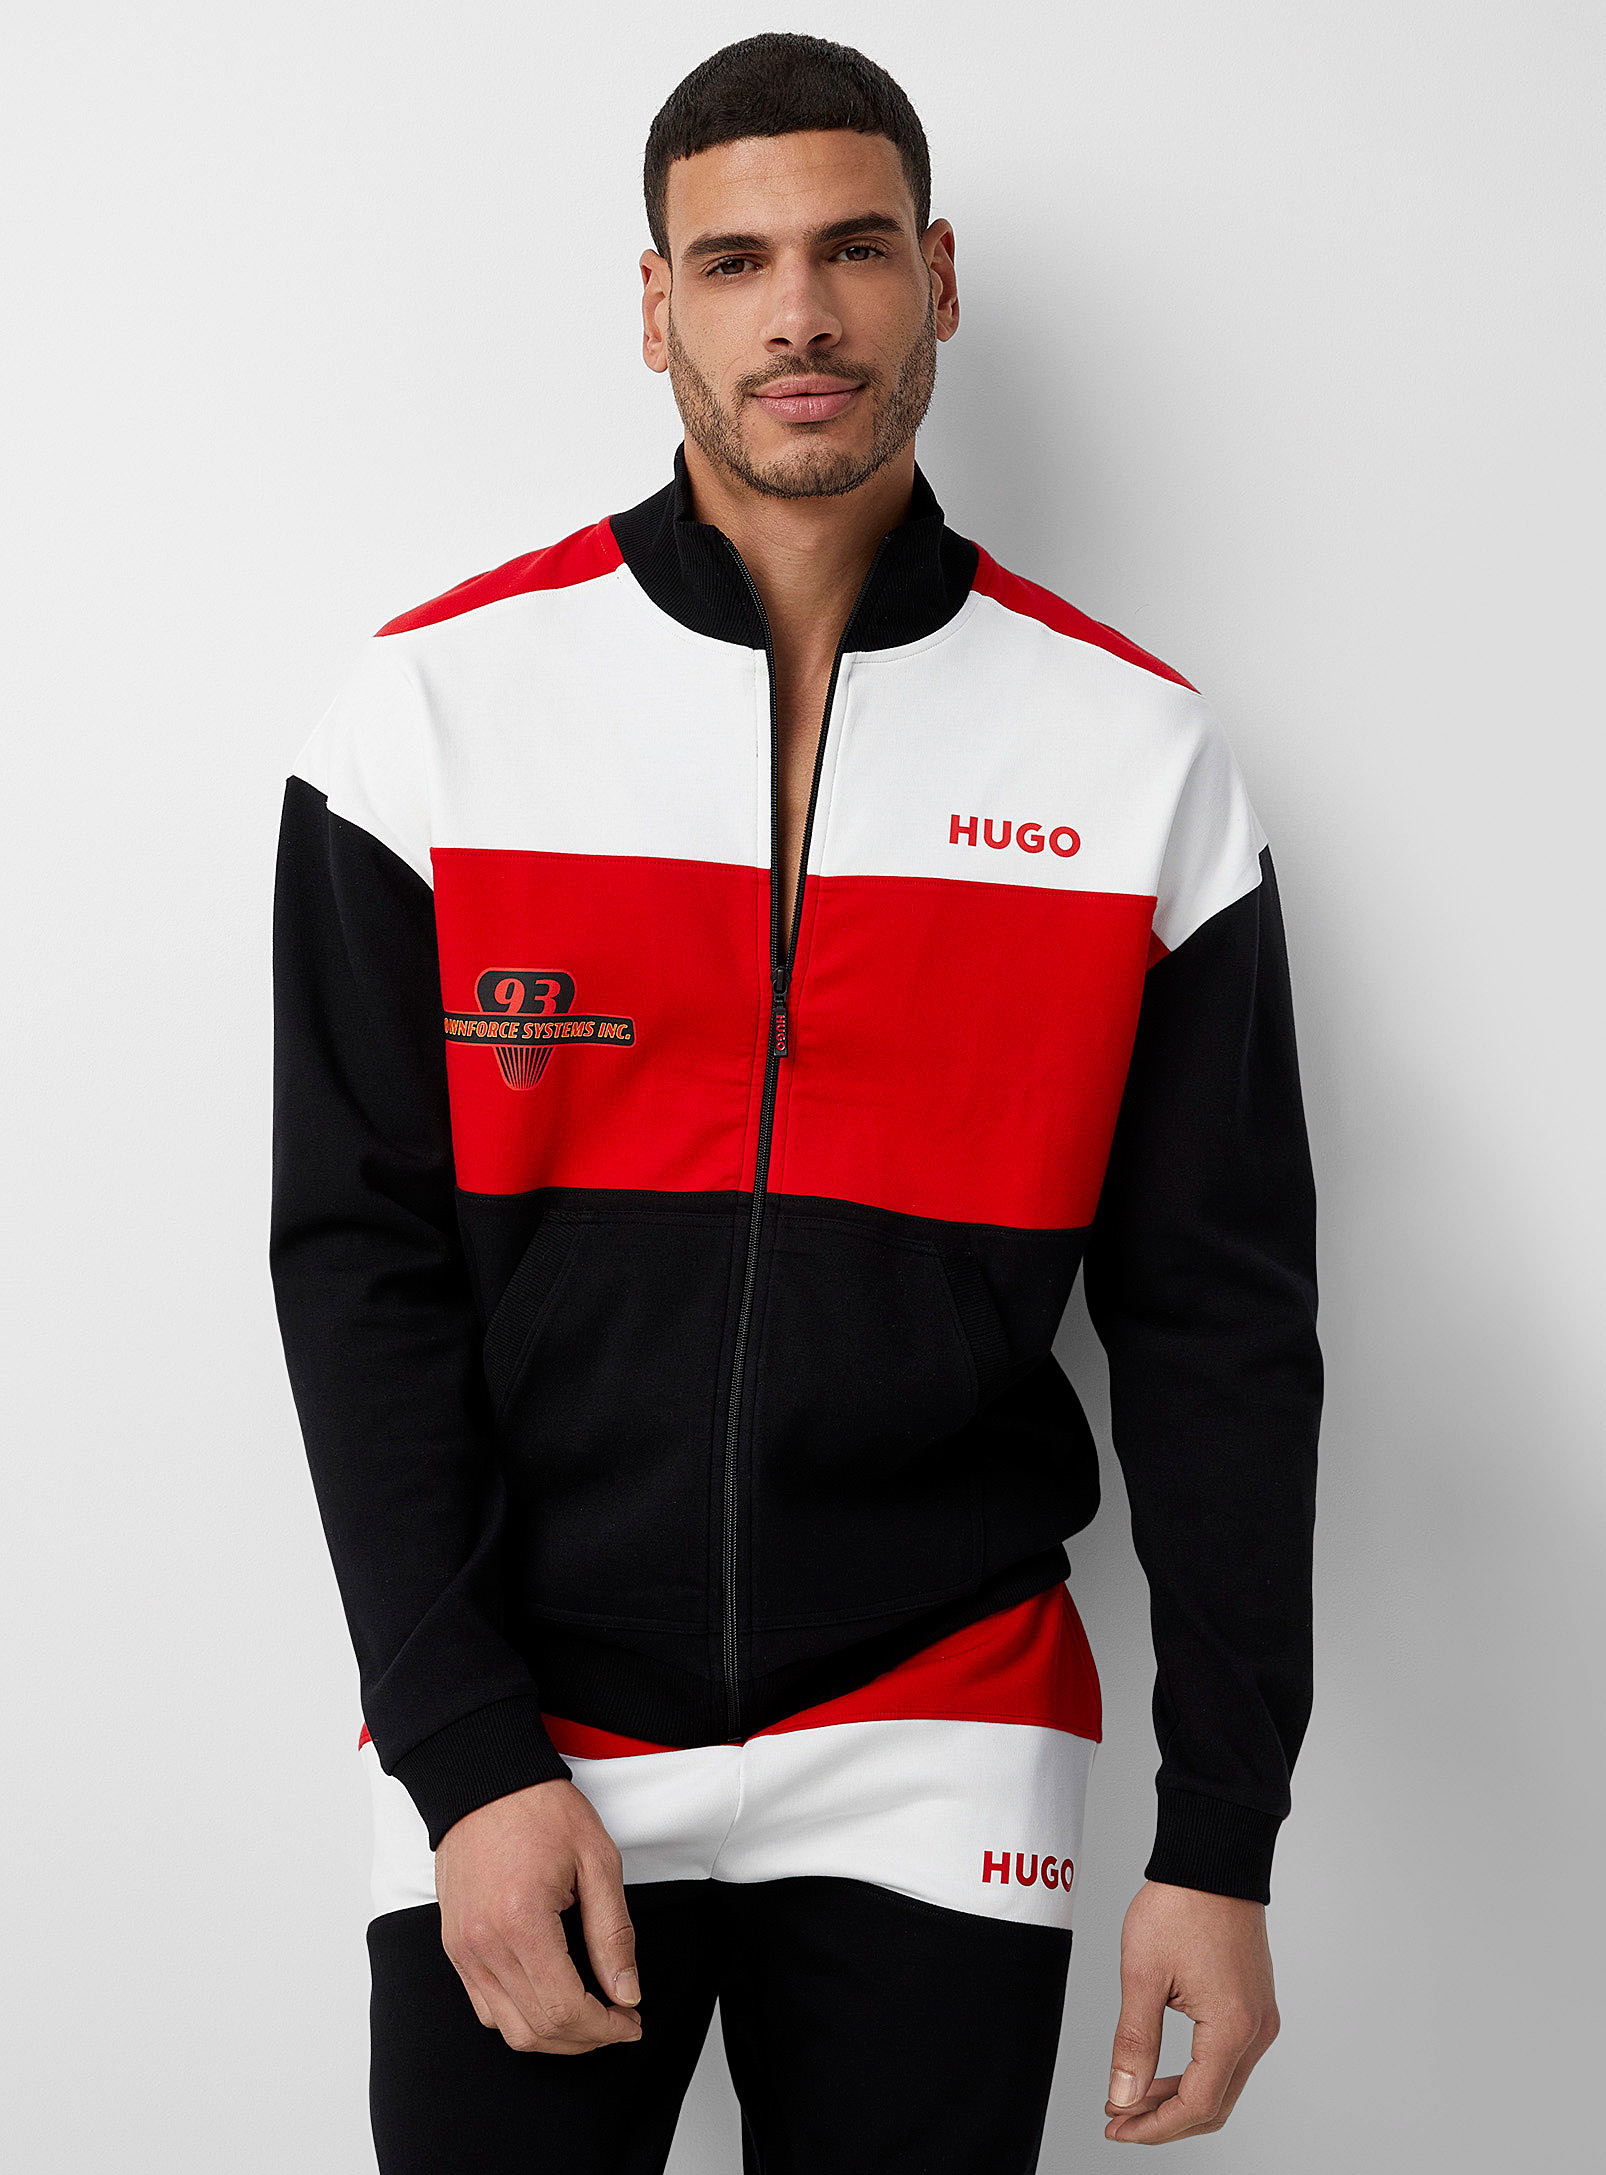 HUGO - Men's Racing lounge jacket